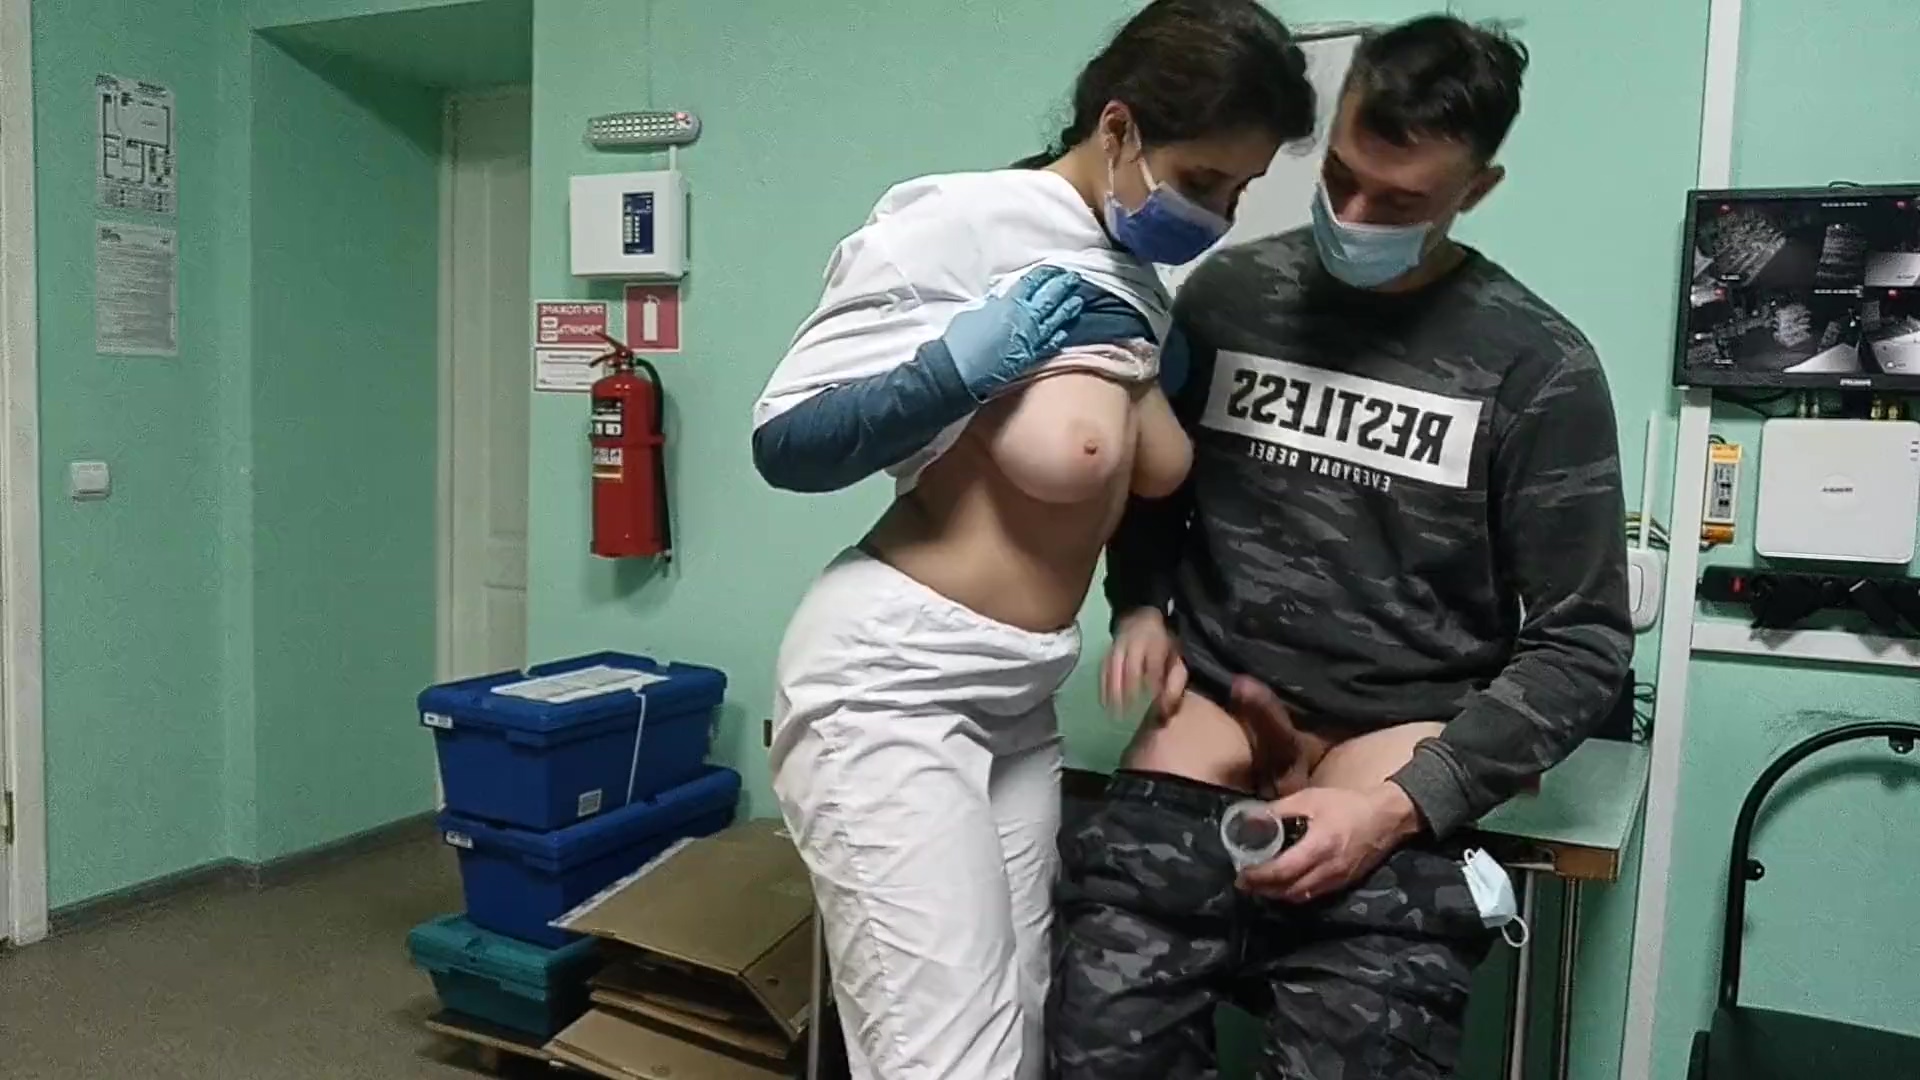 Die vollbusige Krankenschwester überprüfte den Steifen des Typen vor dem schnellen BJ im Krankenhaus Foto